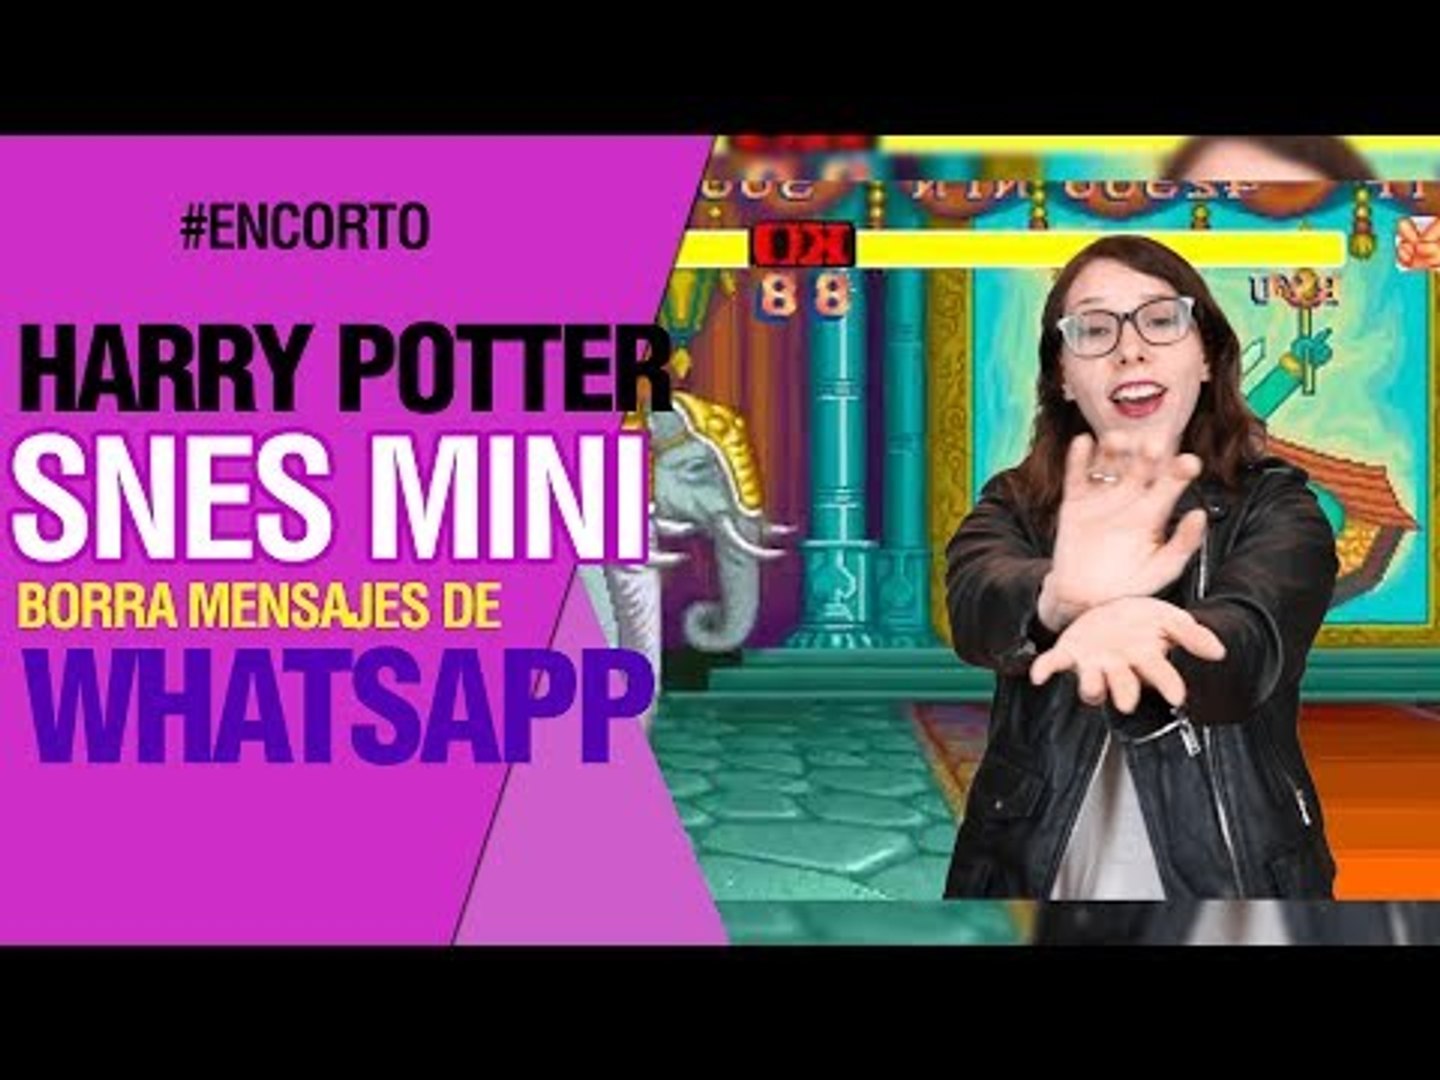 Harry Potter, SNES Mini, novedades de Whatsapp, 10 años del iPhone y más -  #UnoceroEnCorto - Vídeo Dailymotion